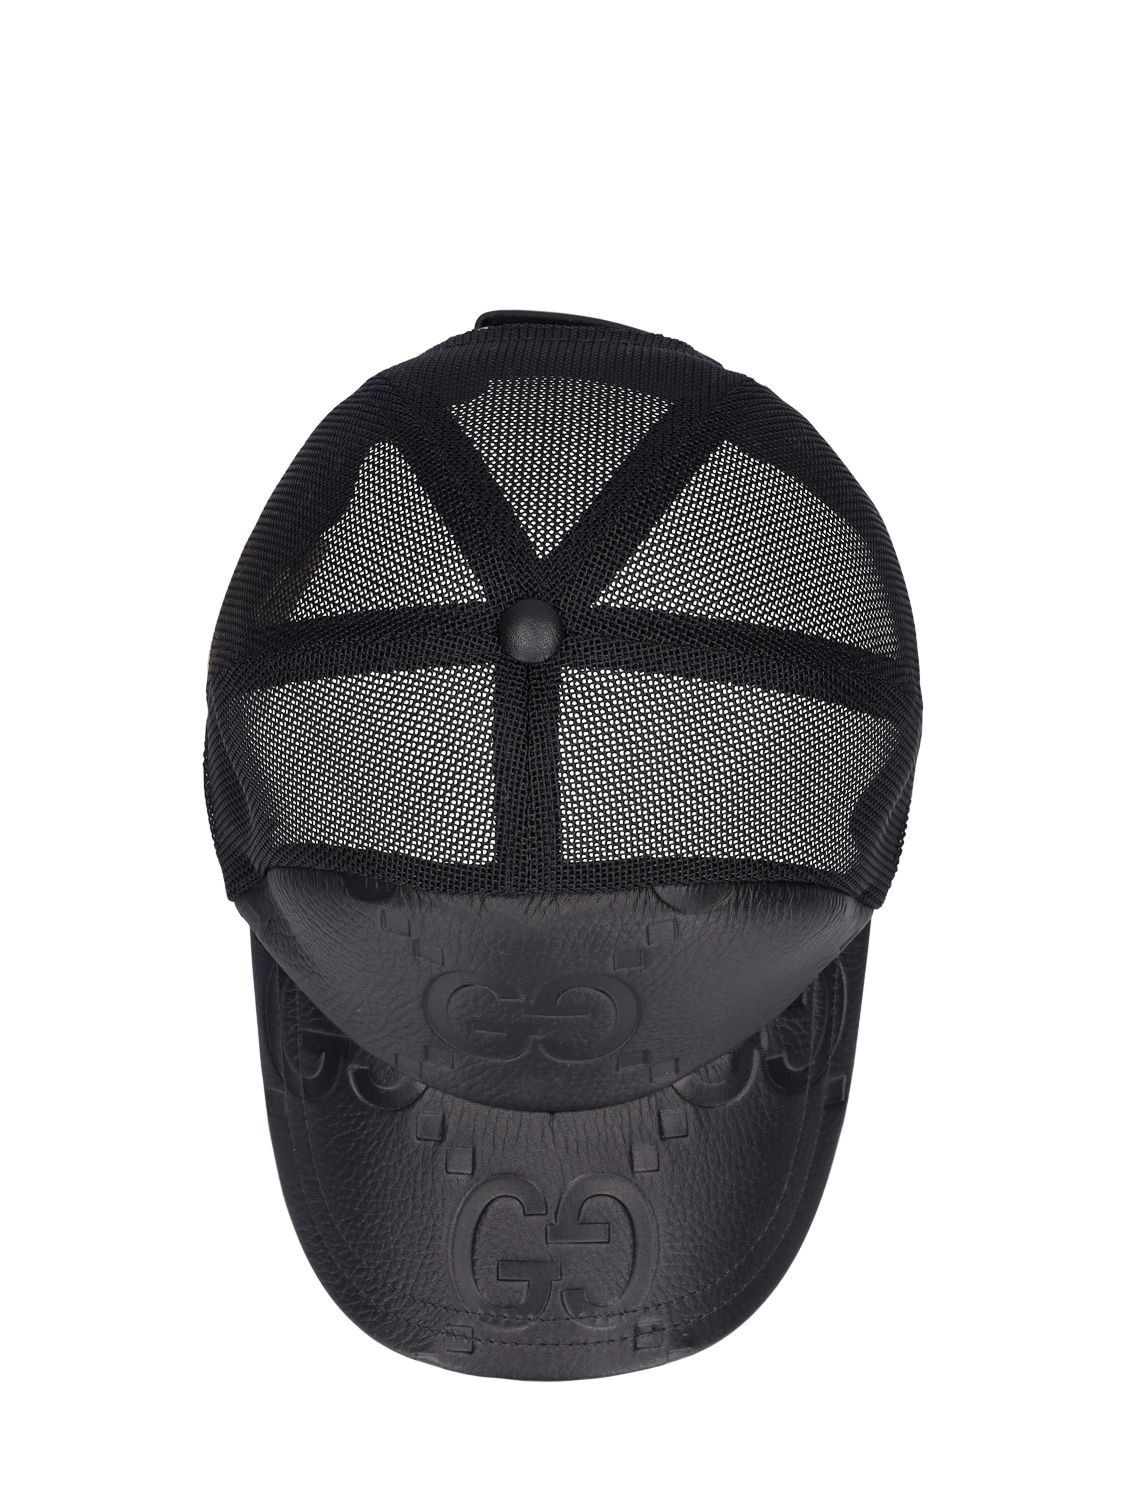 Gucci Jumbo GG Baseball Hat, Size M, Black